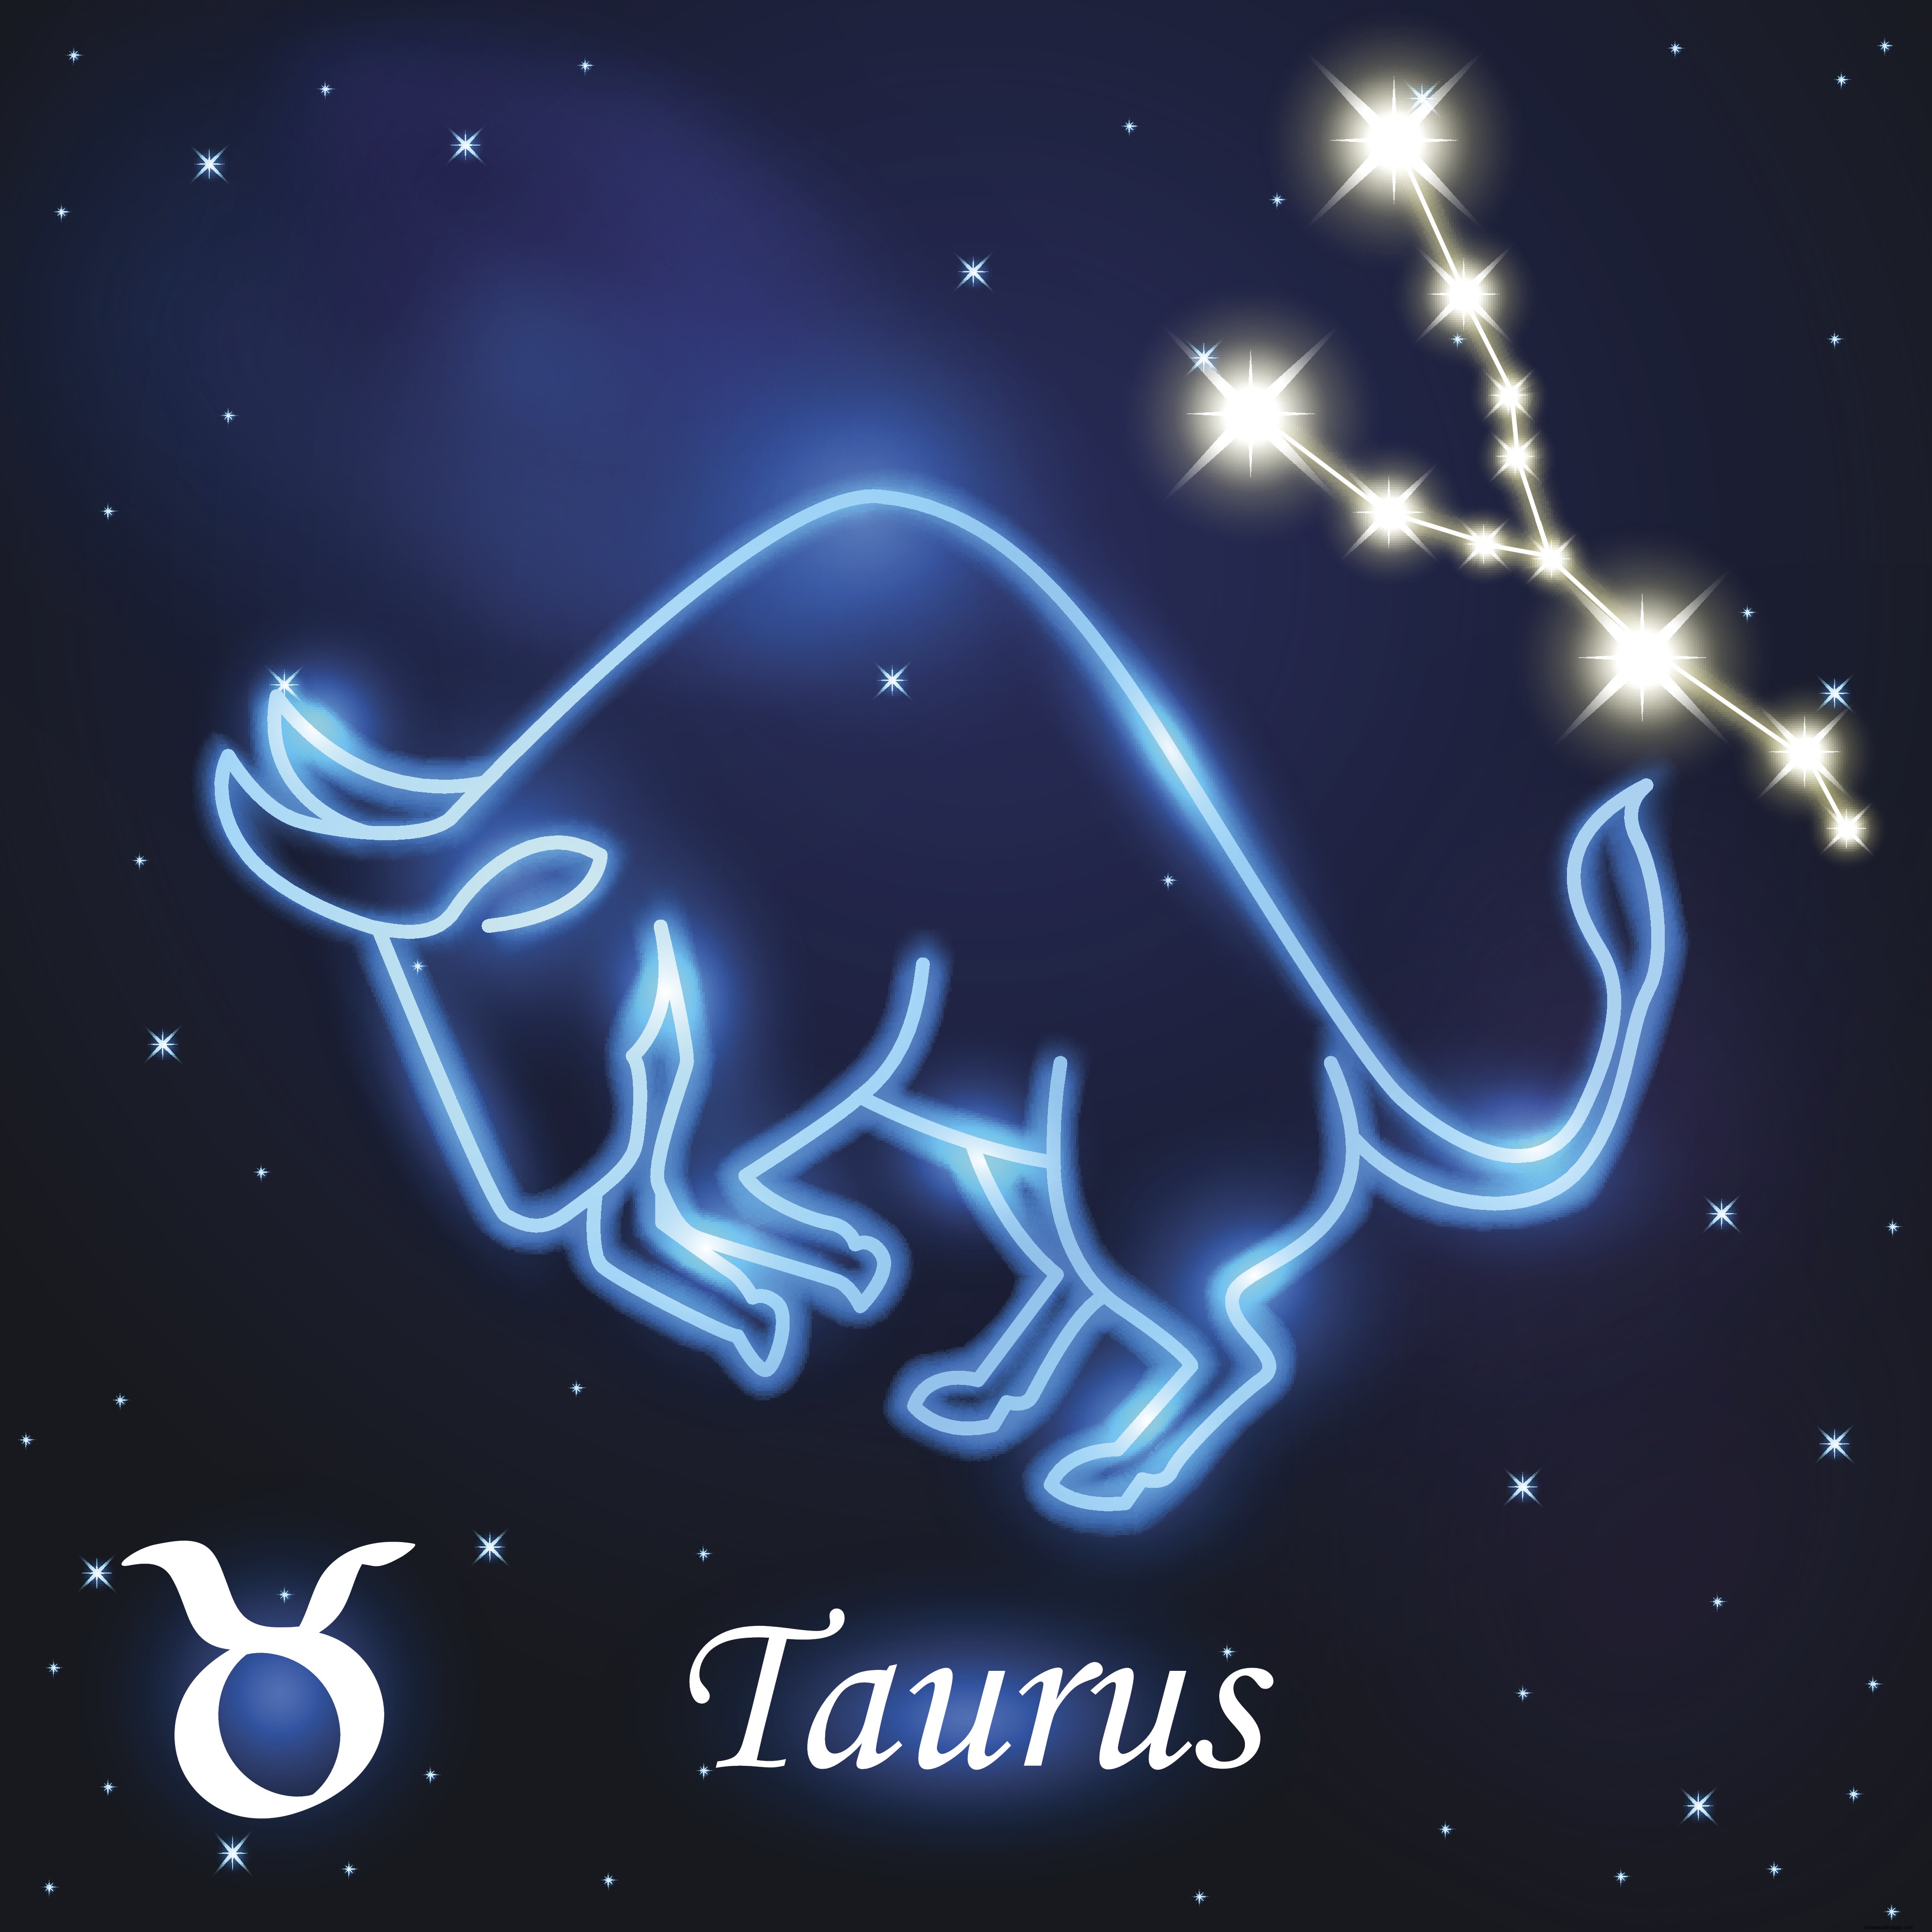 Týdenní horoskop od 16. prosince do 22. prosince:Rak, Leo je vaše astrologická předpověď na týden dopředu 